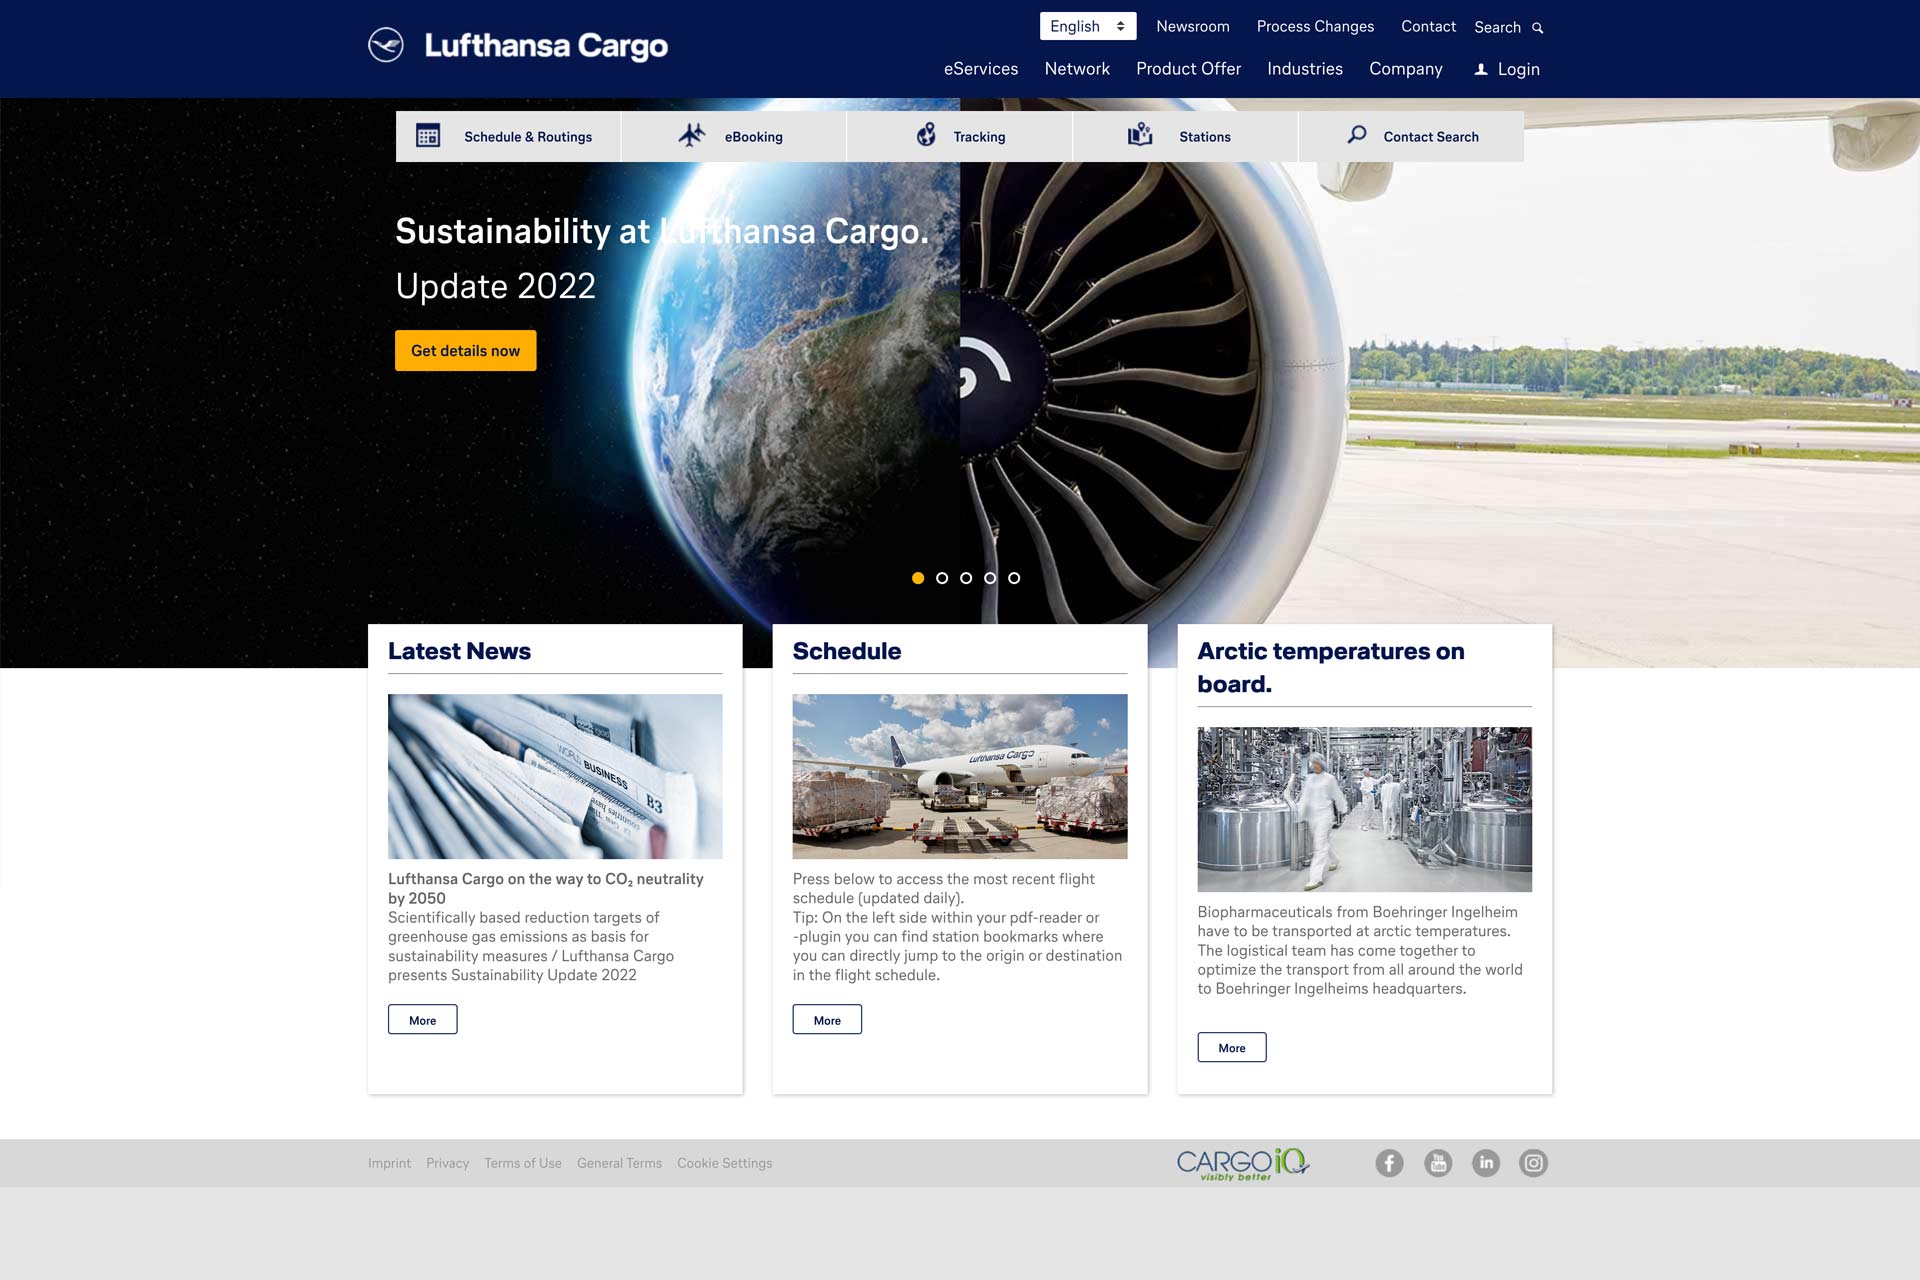 Projektbeispiel Lufthansa Cargo: Transport of air freight